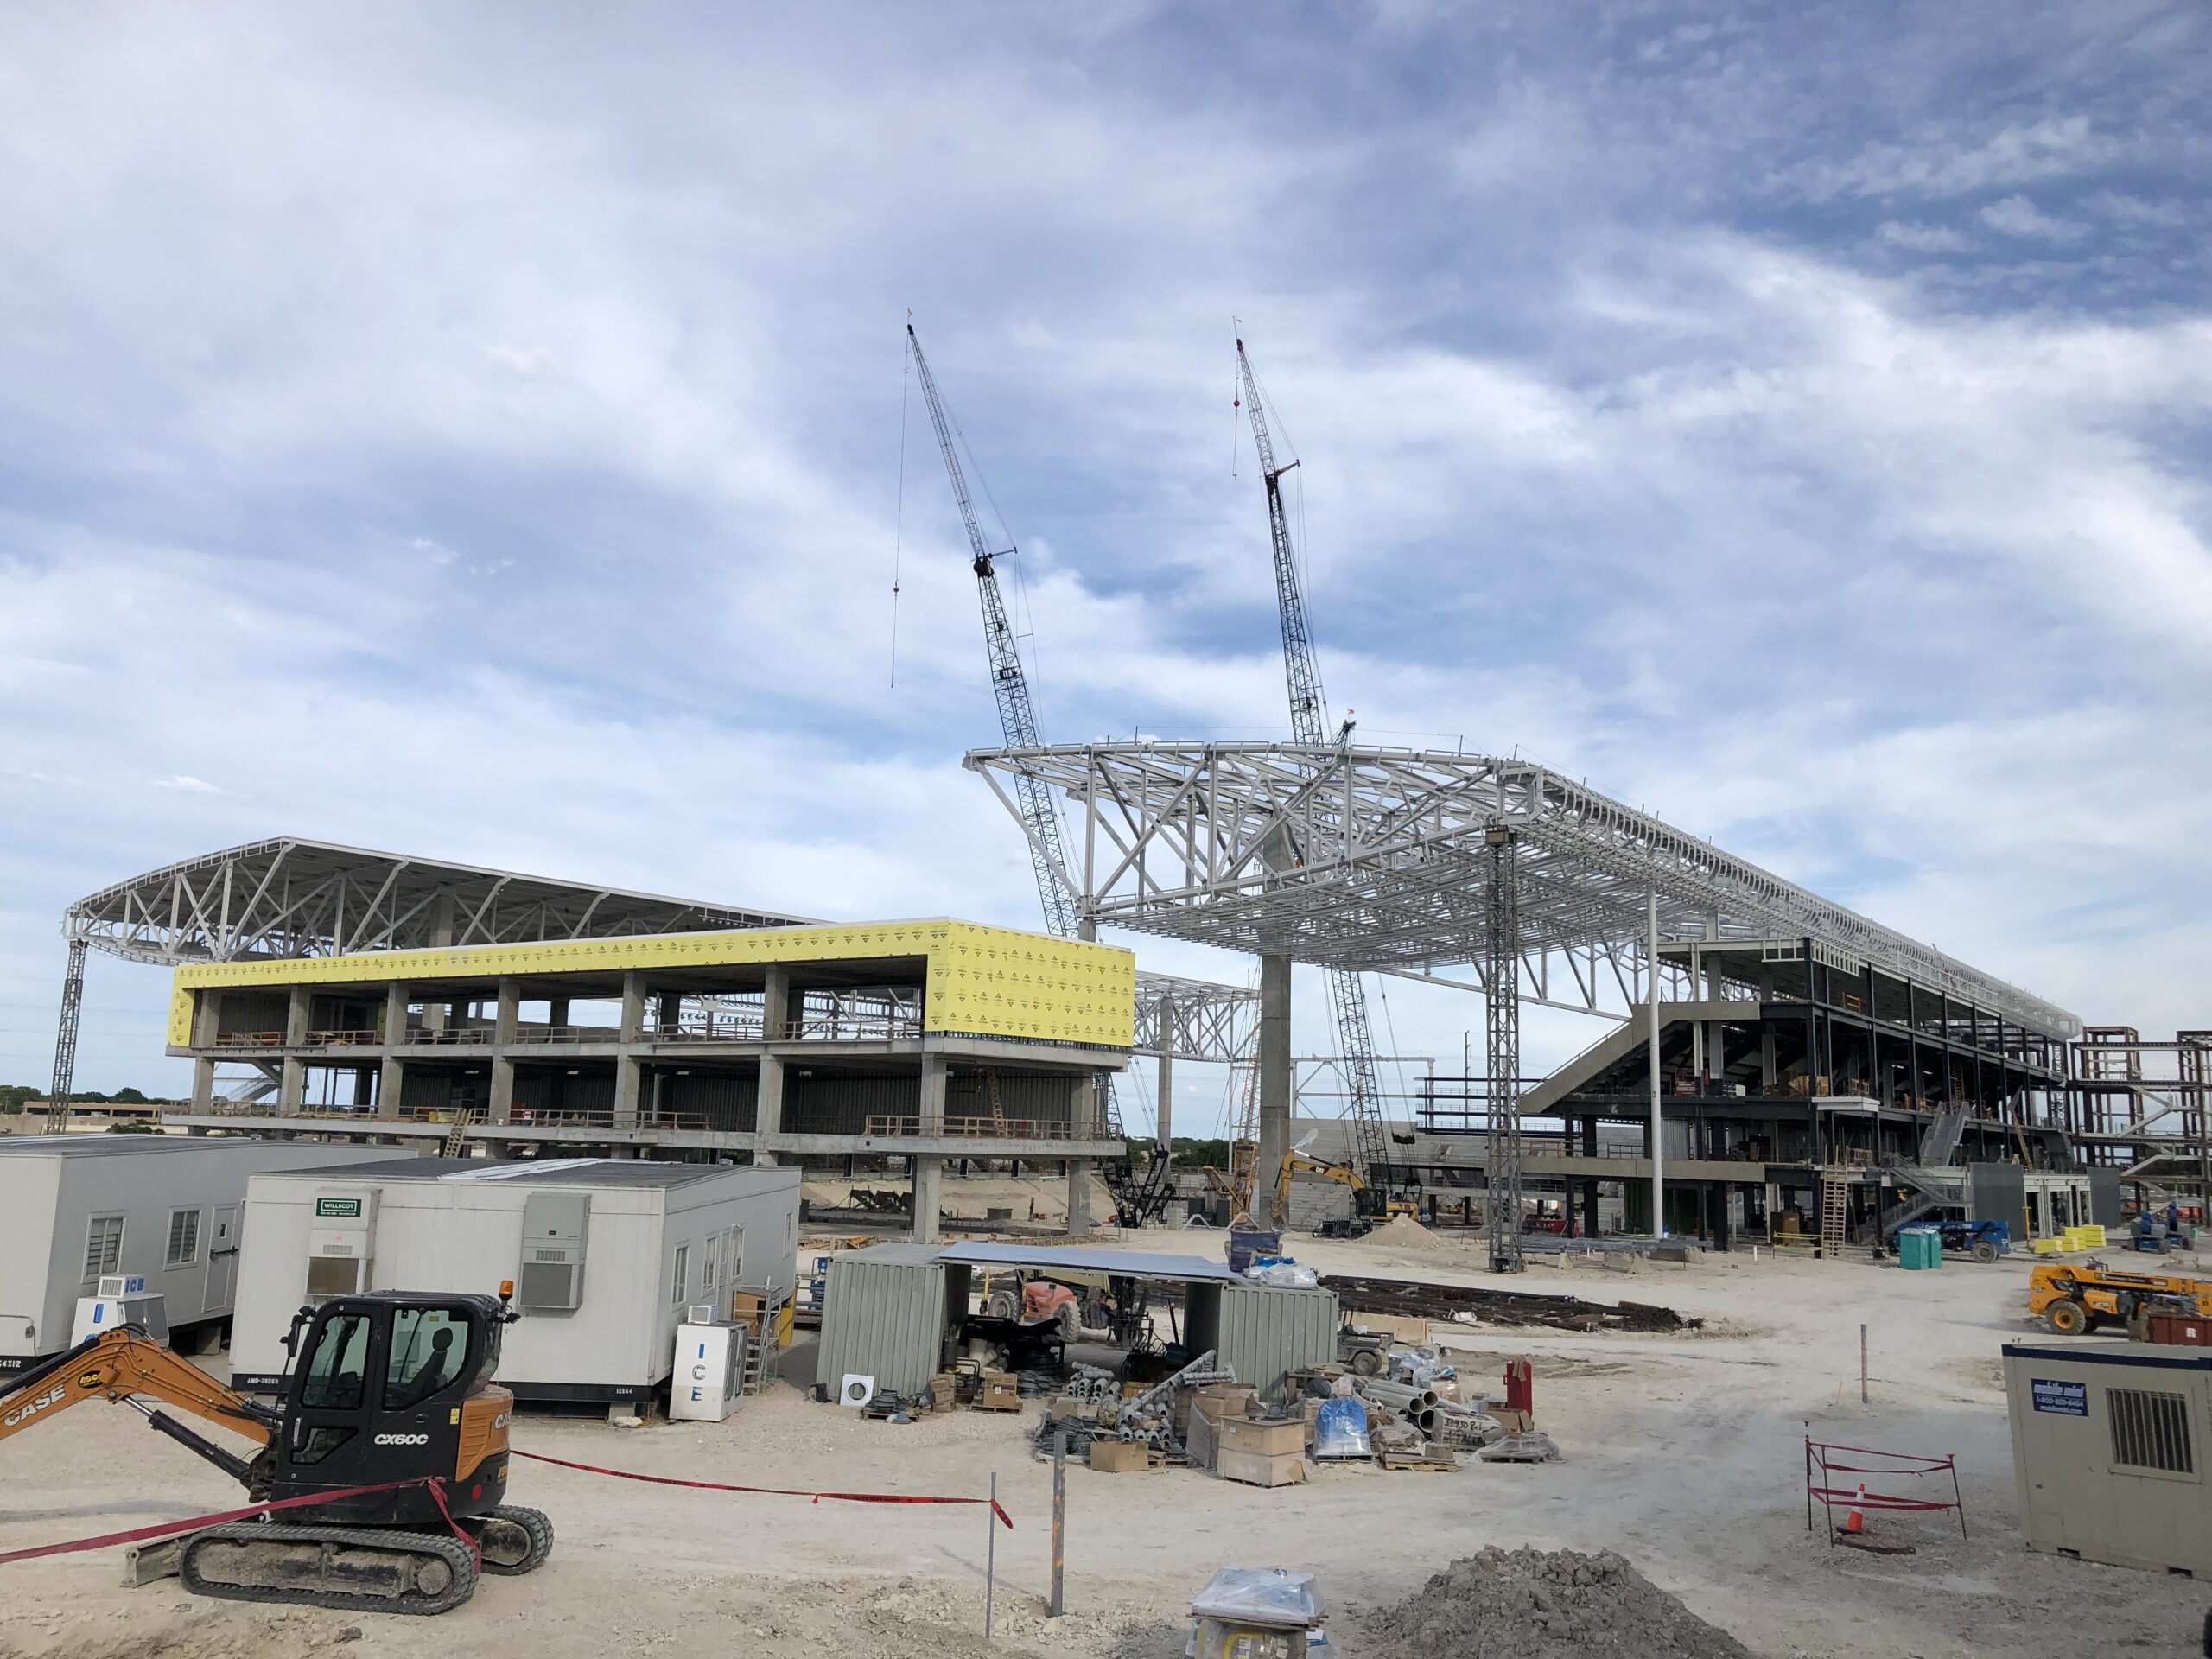 Q2 Stadium under construction